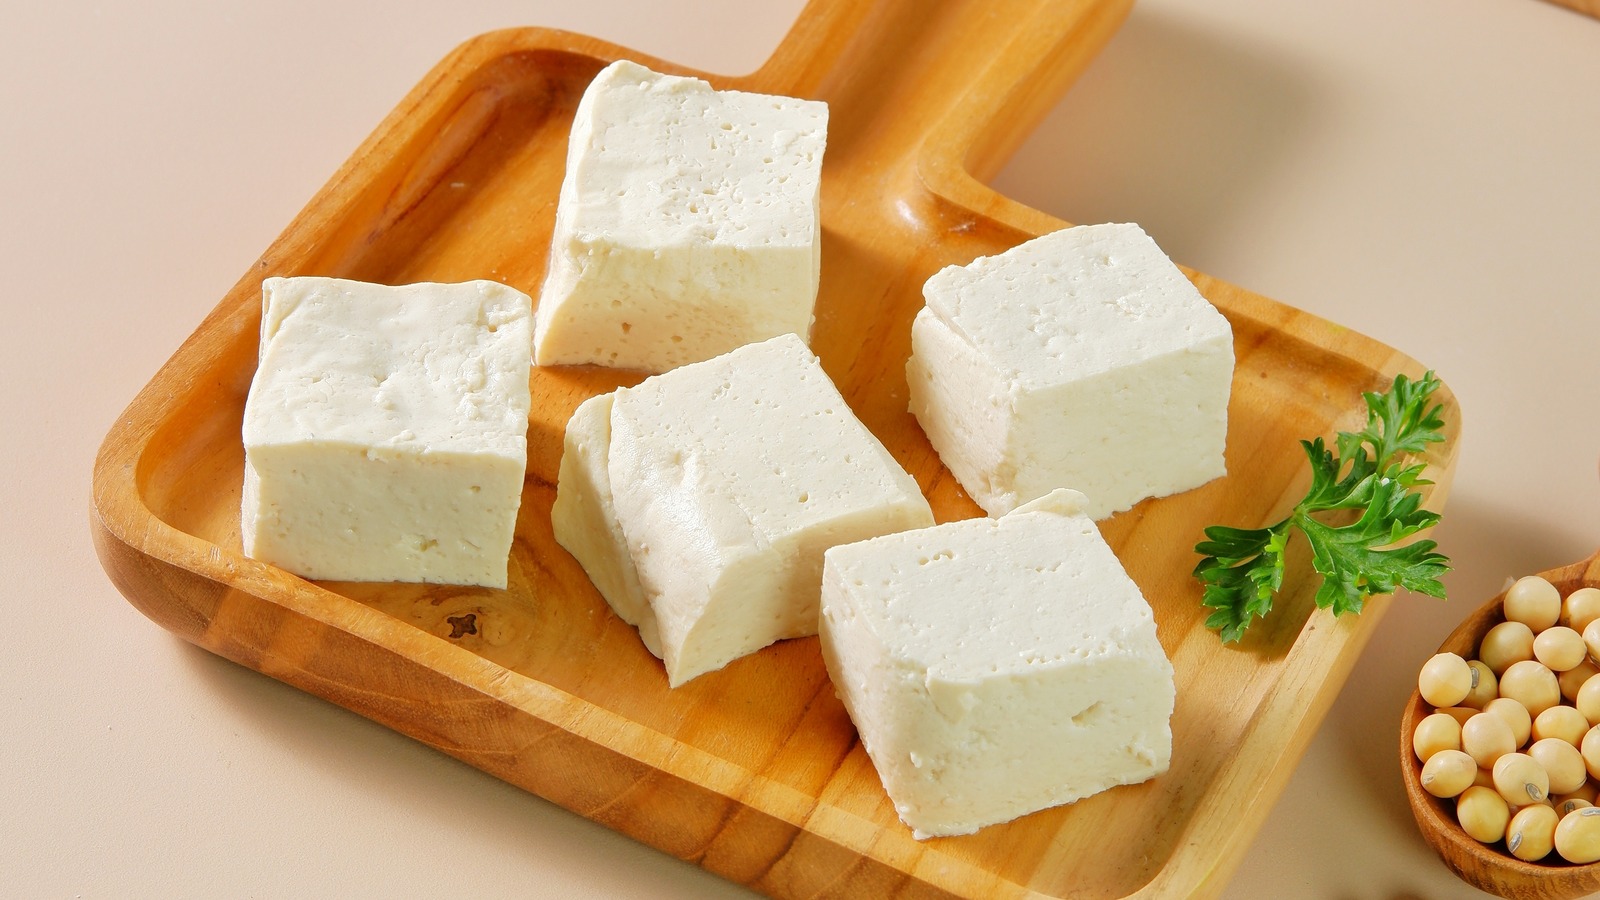 Tahu,Susu,Or,Milk,Tofu,Is,Made,By,Coagulating,Soy